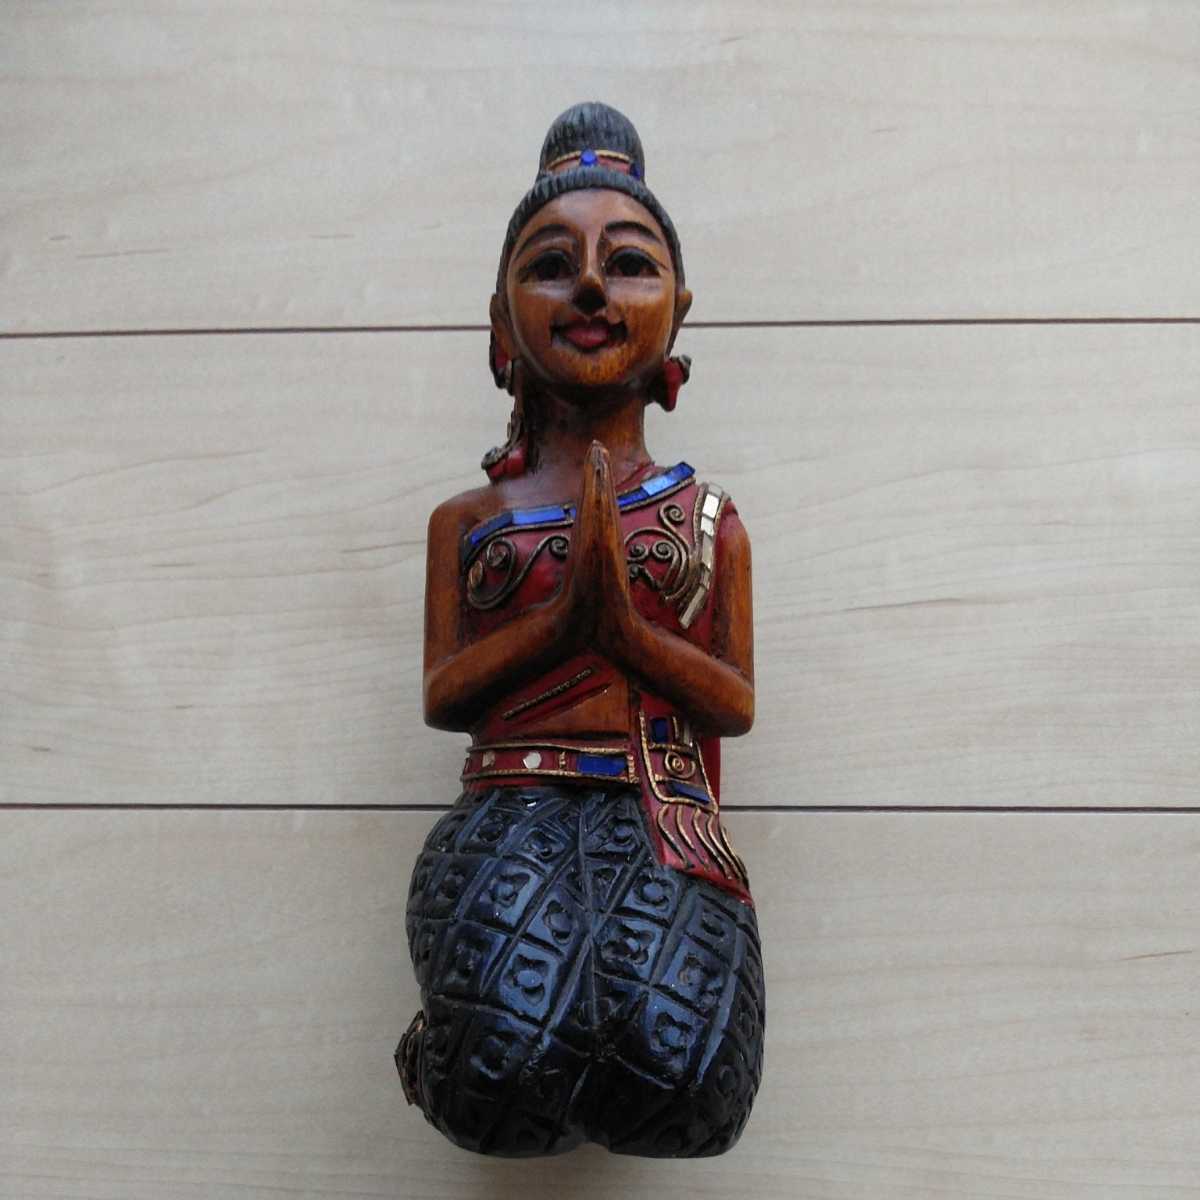 ■『微笑みの国Thaiの木彫人形(Sawadika！)』置物１体。座高約26㎝。失礼乍ら体重500ｇ。Sawadika！＝お早う御座います(女性的な謂い方)。